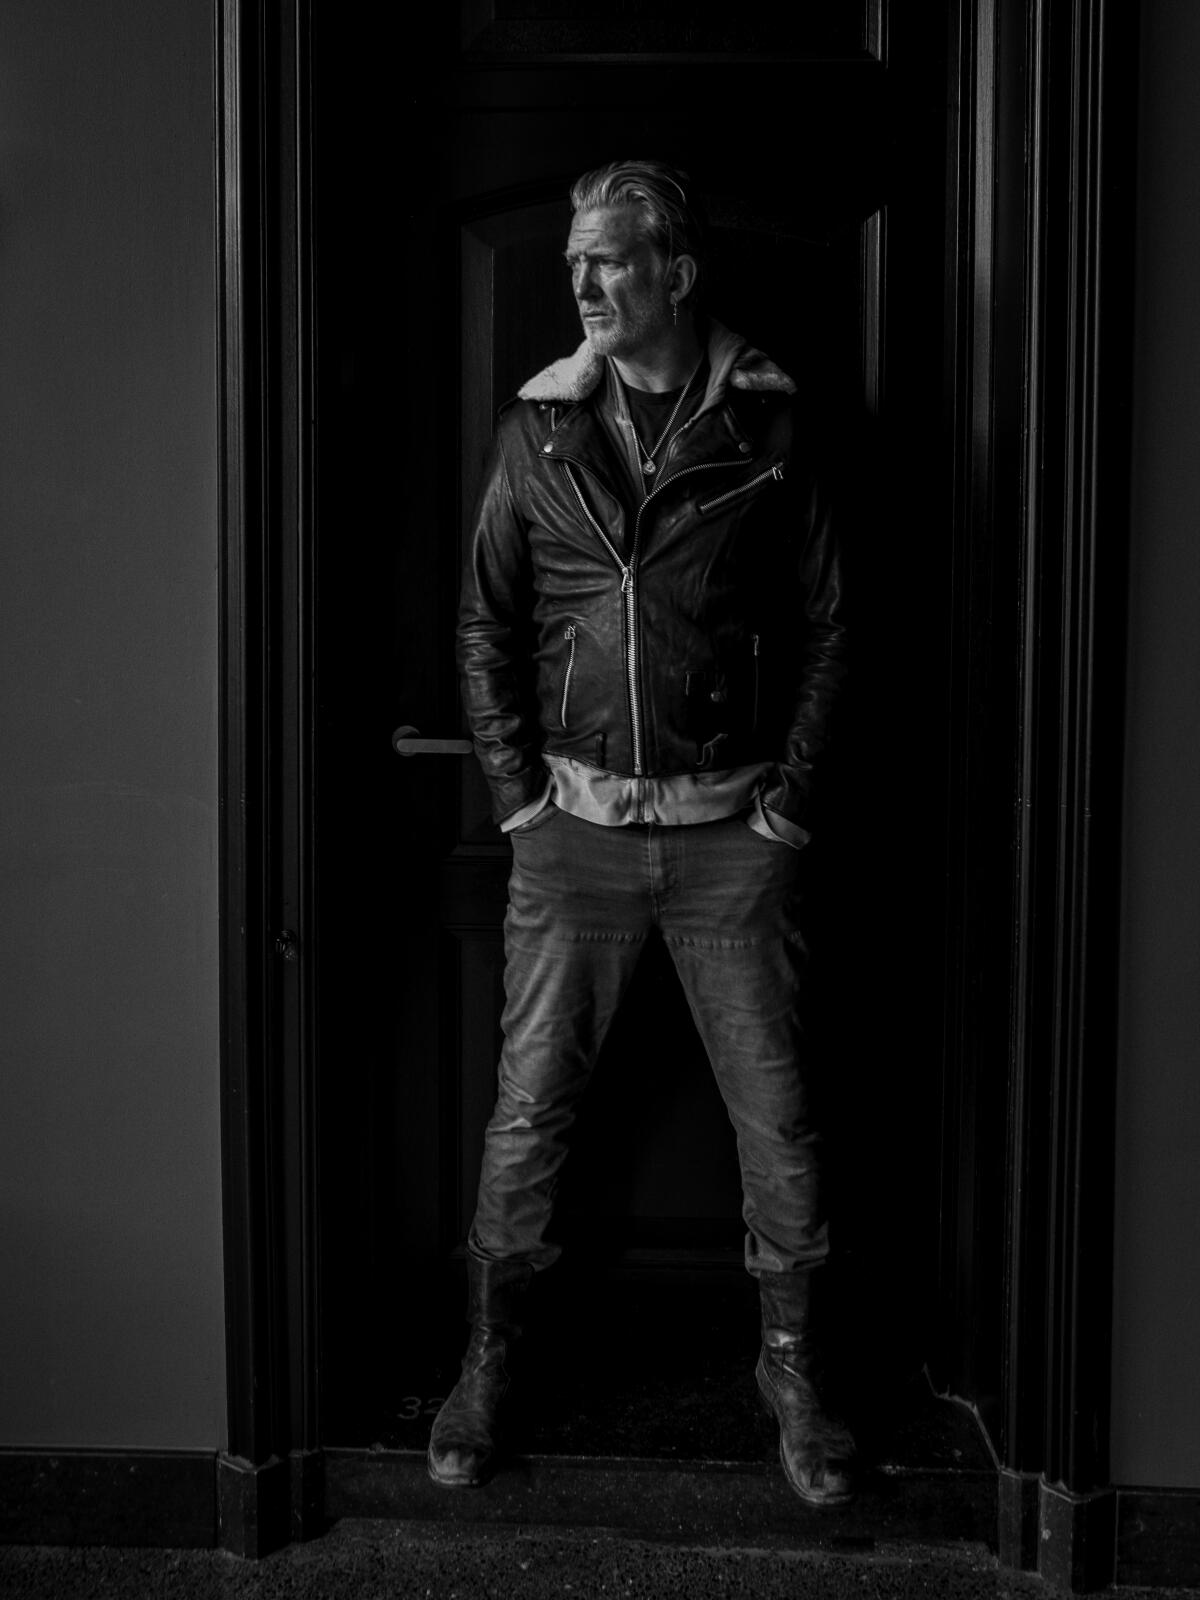 Josh Homme standing in a doorway